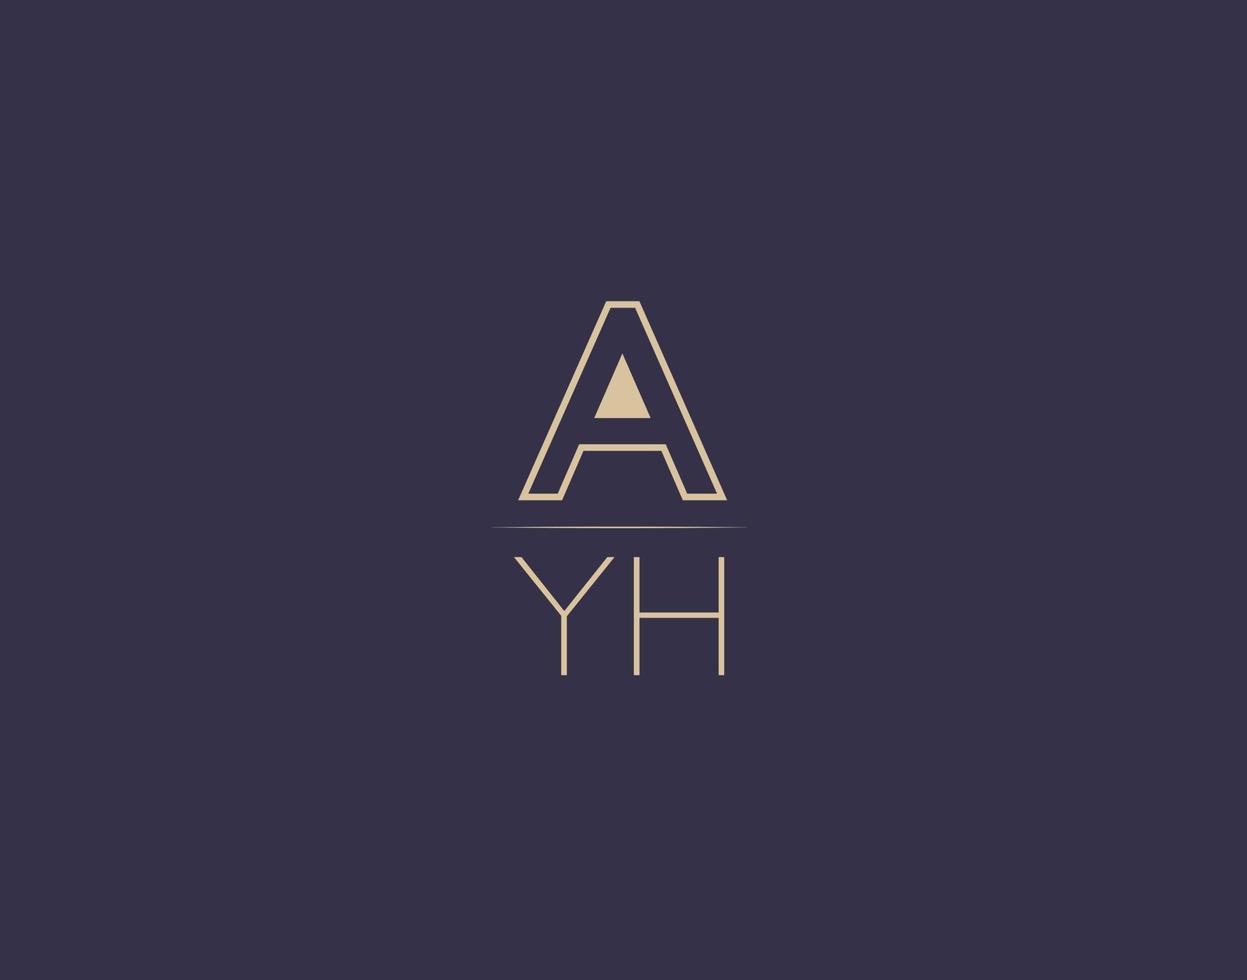 ayh brief logo ontwerp modern minimalistische vector afbeeldingen